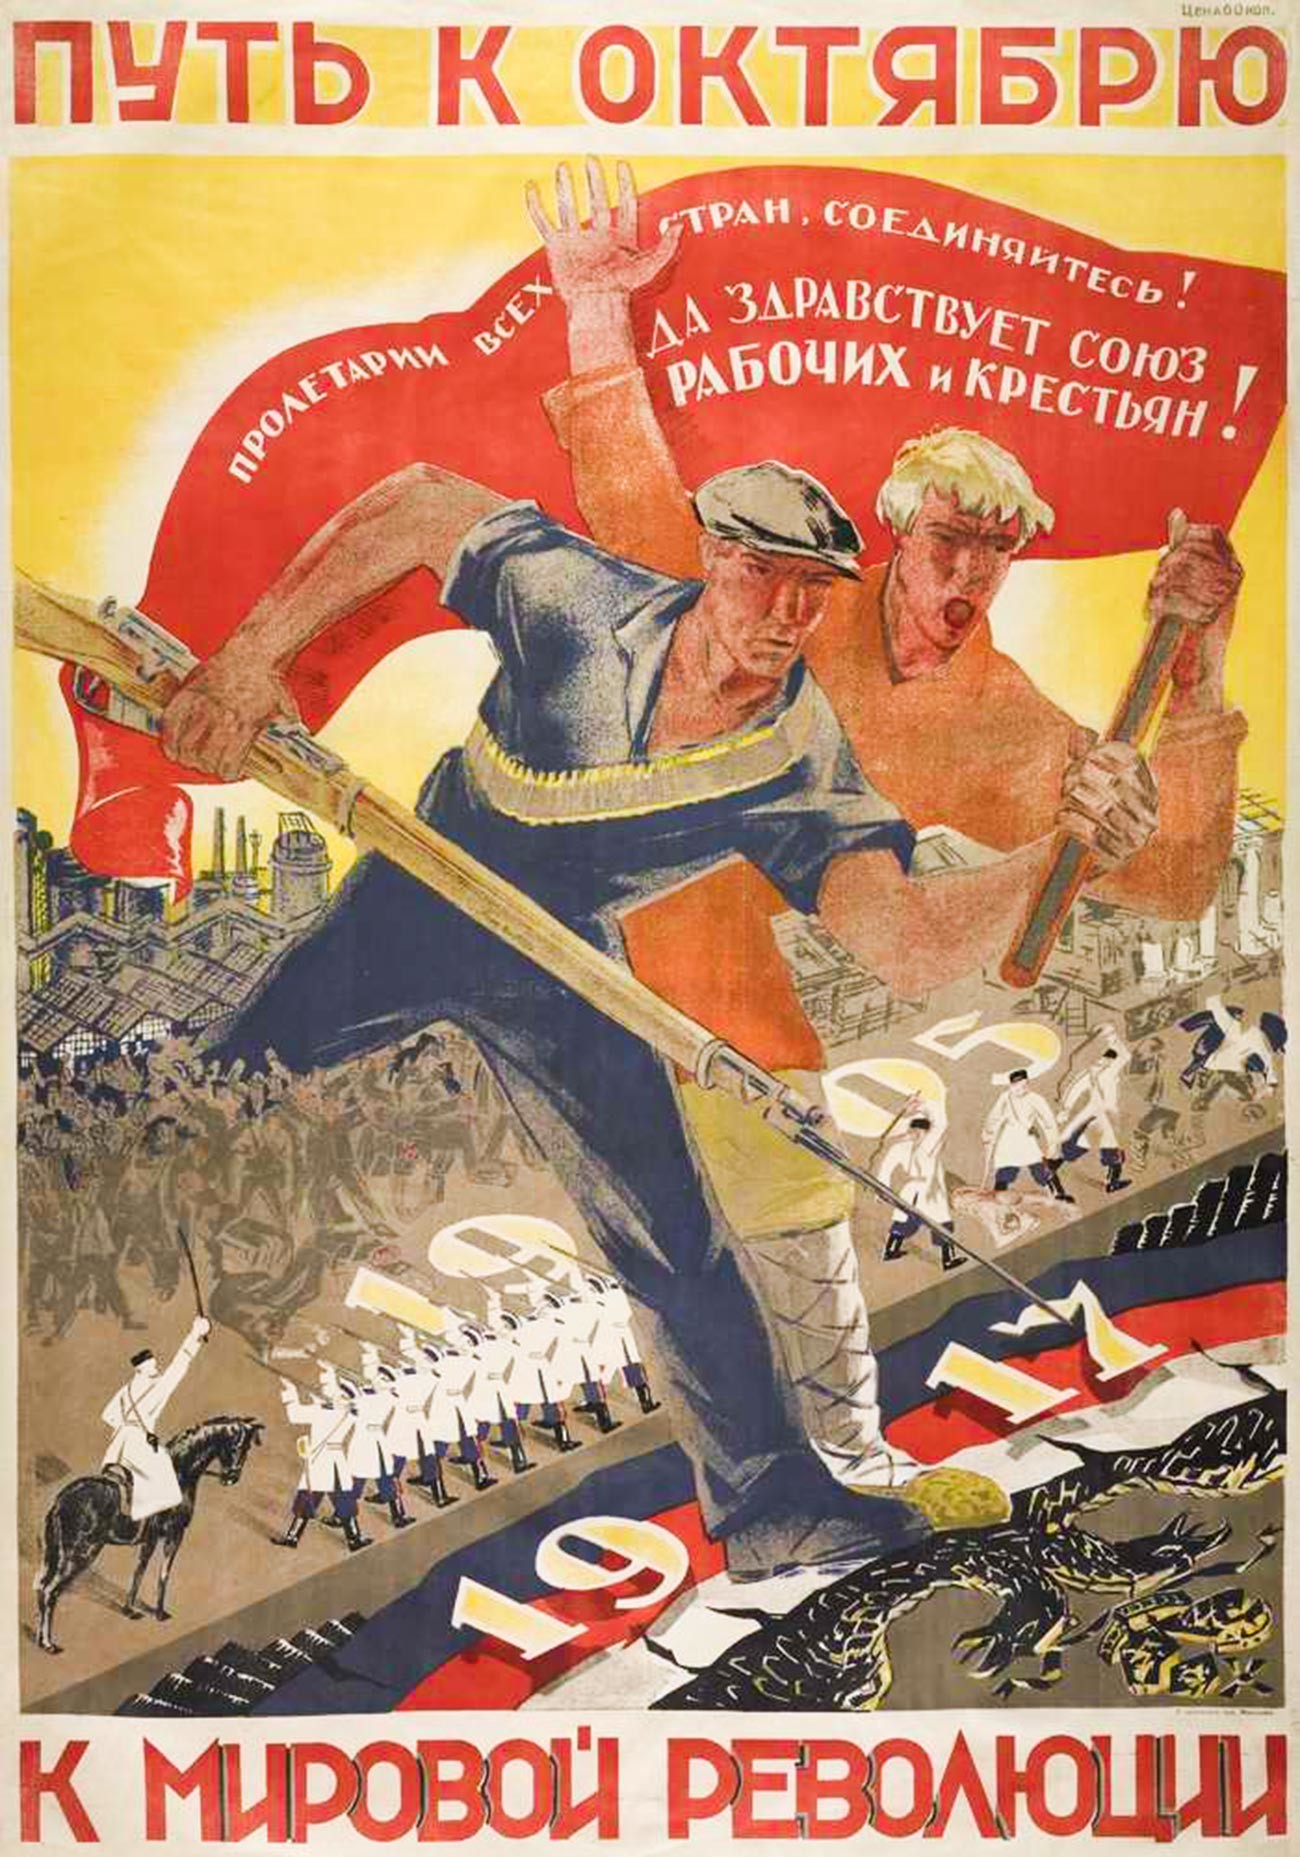 La voie vers octobre [référence à la Révolution russe d’Octobre]. Prolétaires de tous les pays, unissez-vous ! Vive l’union des ouvriers et paysans. Vers la révolution mondiale.